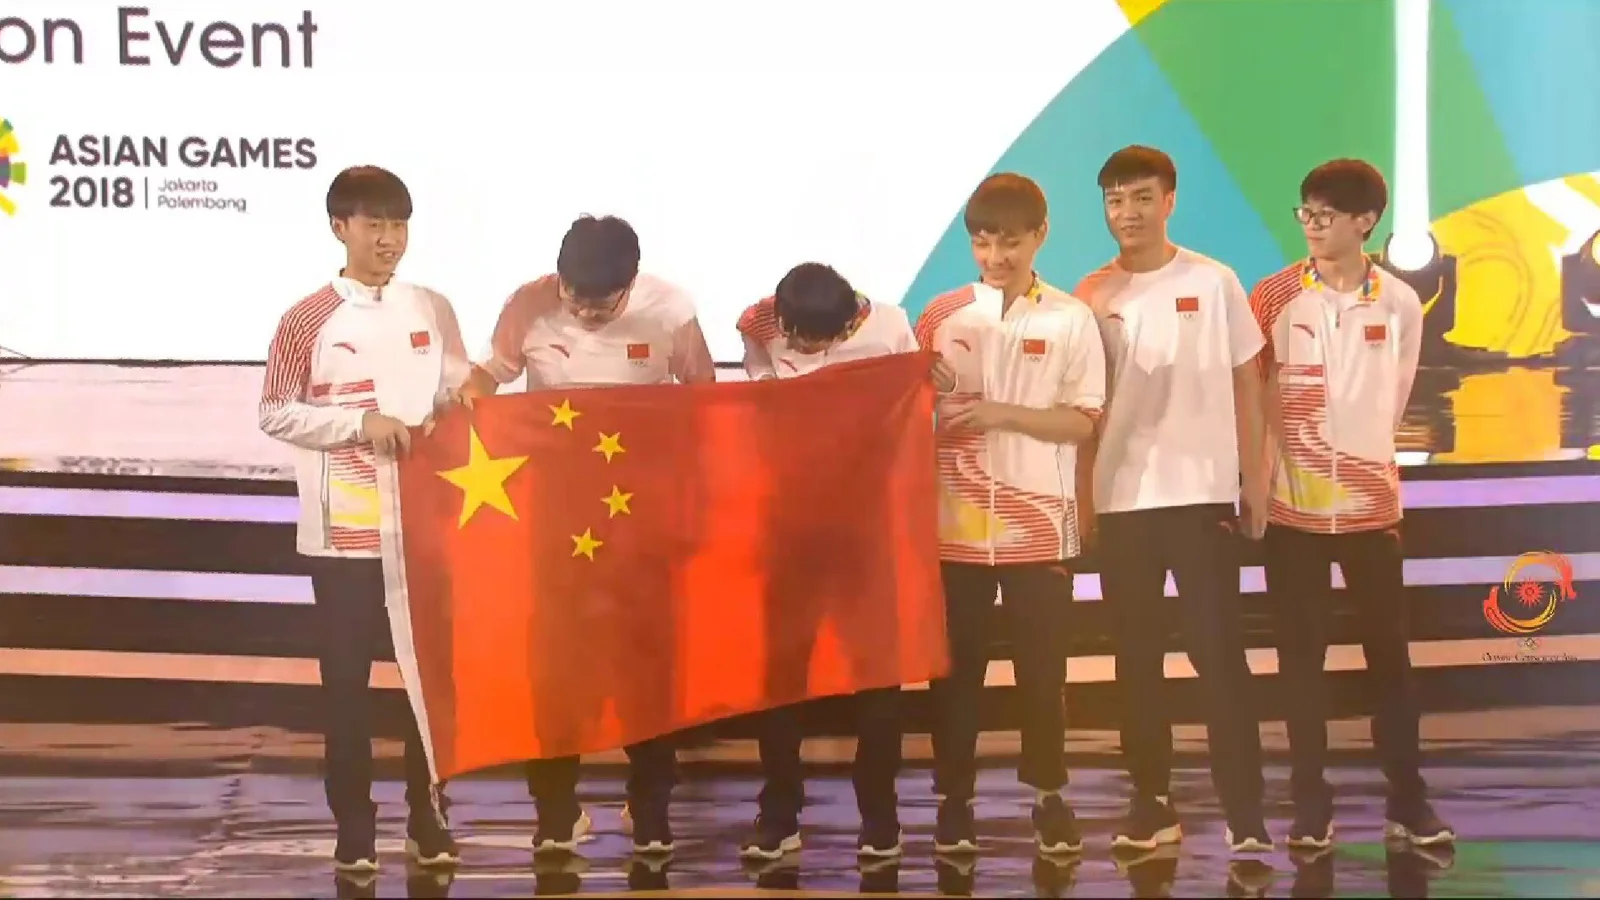 中国队3:1战胜韩国队赢得雅加达亚运会《英雄联盟》项目冠军